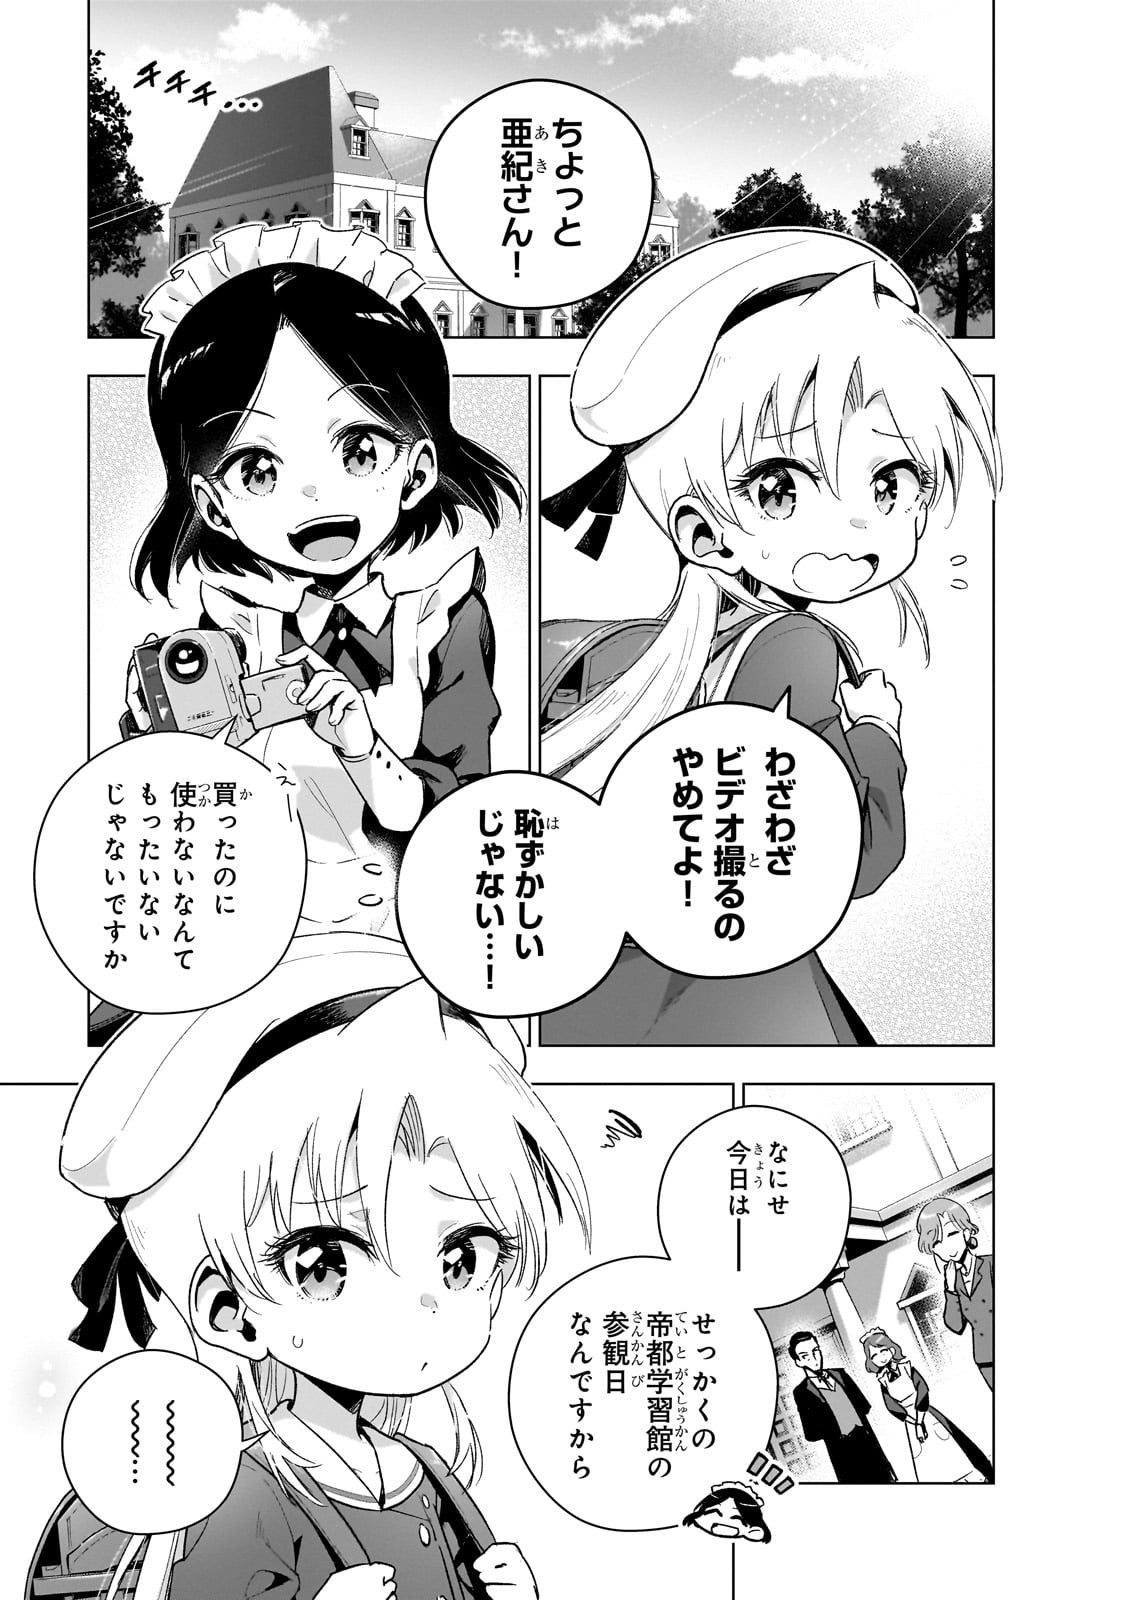 Gendai Shakai de Otome Game no Akuyaku Reijou wo suru no wa Chotto Taihen - Chapter 14.5 - Page 1